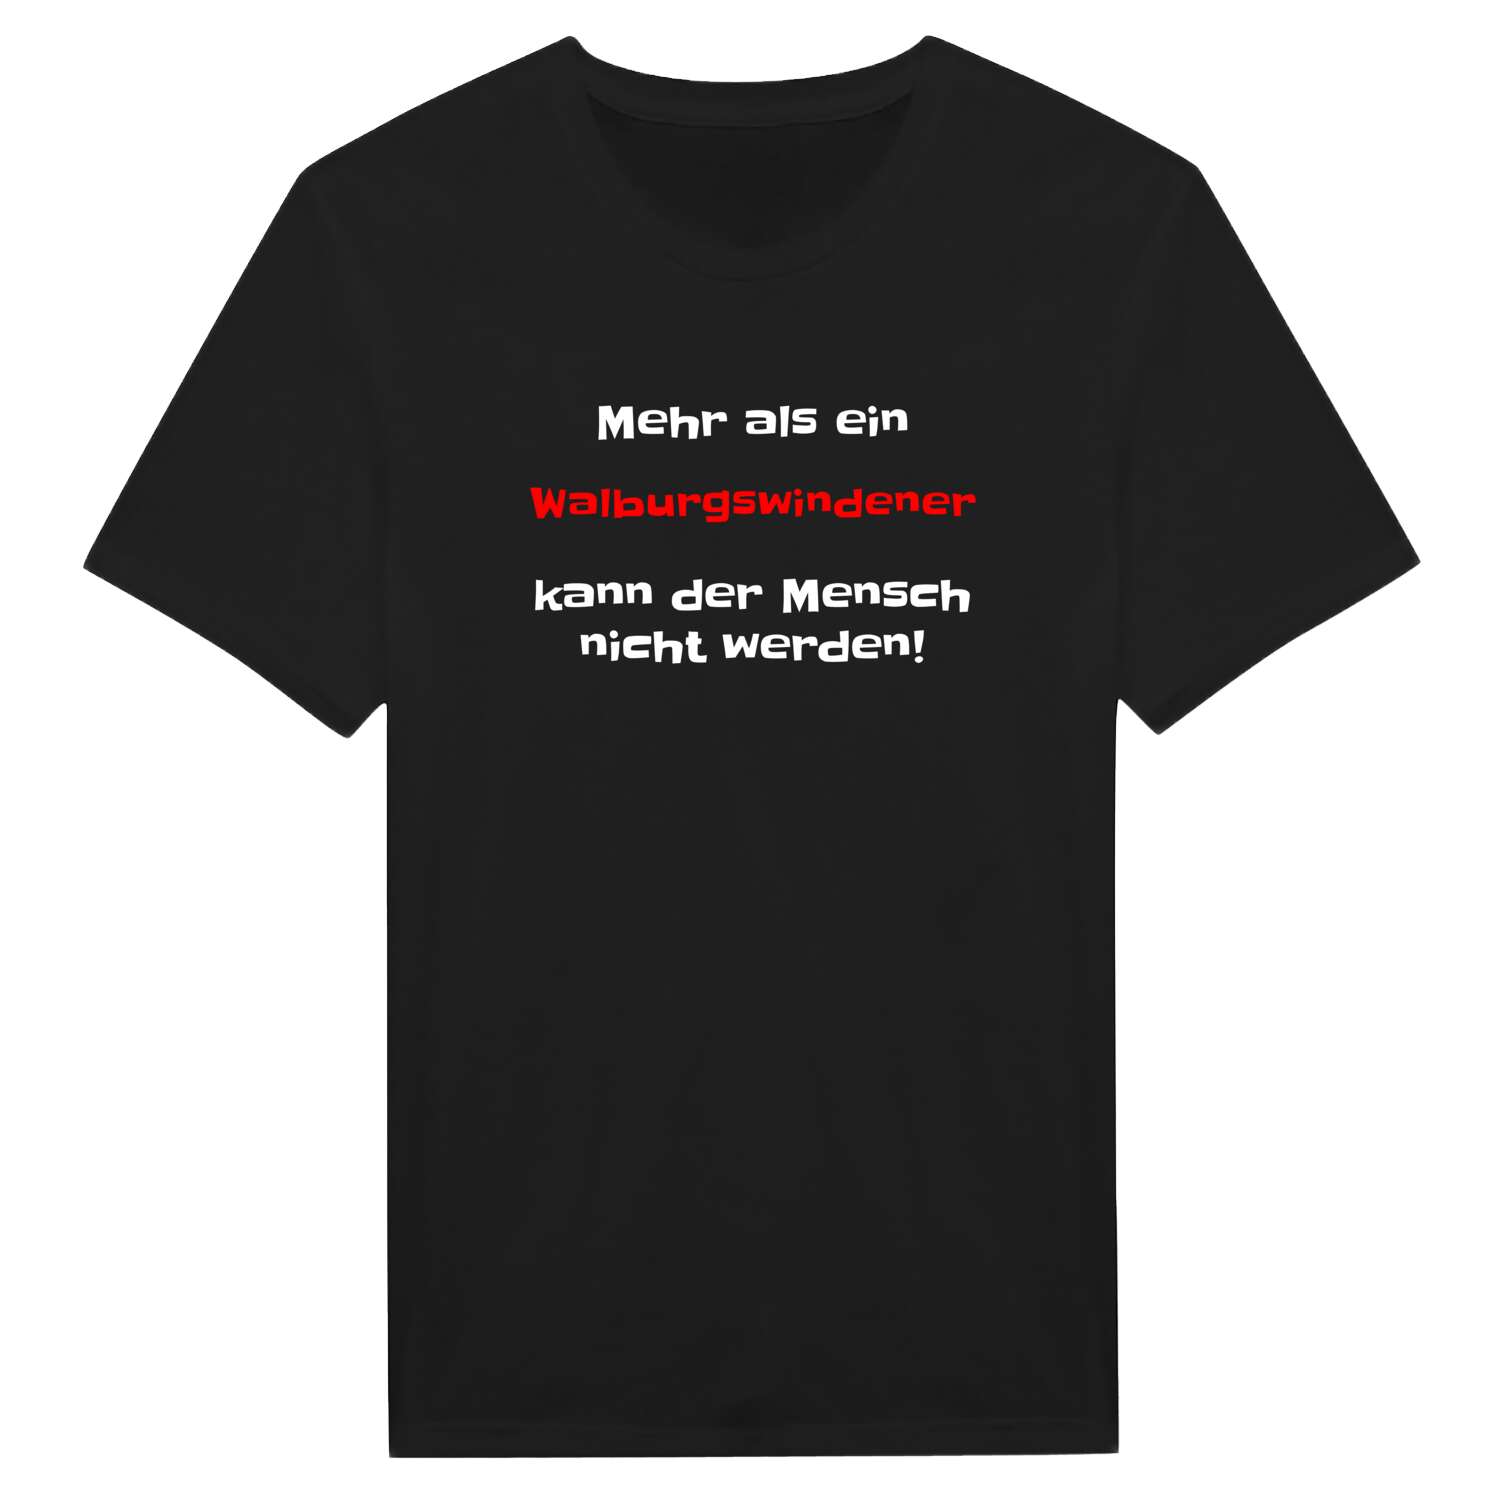 Walburgswinden T-Shirt »Mehr als ein«